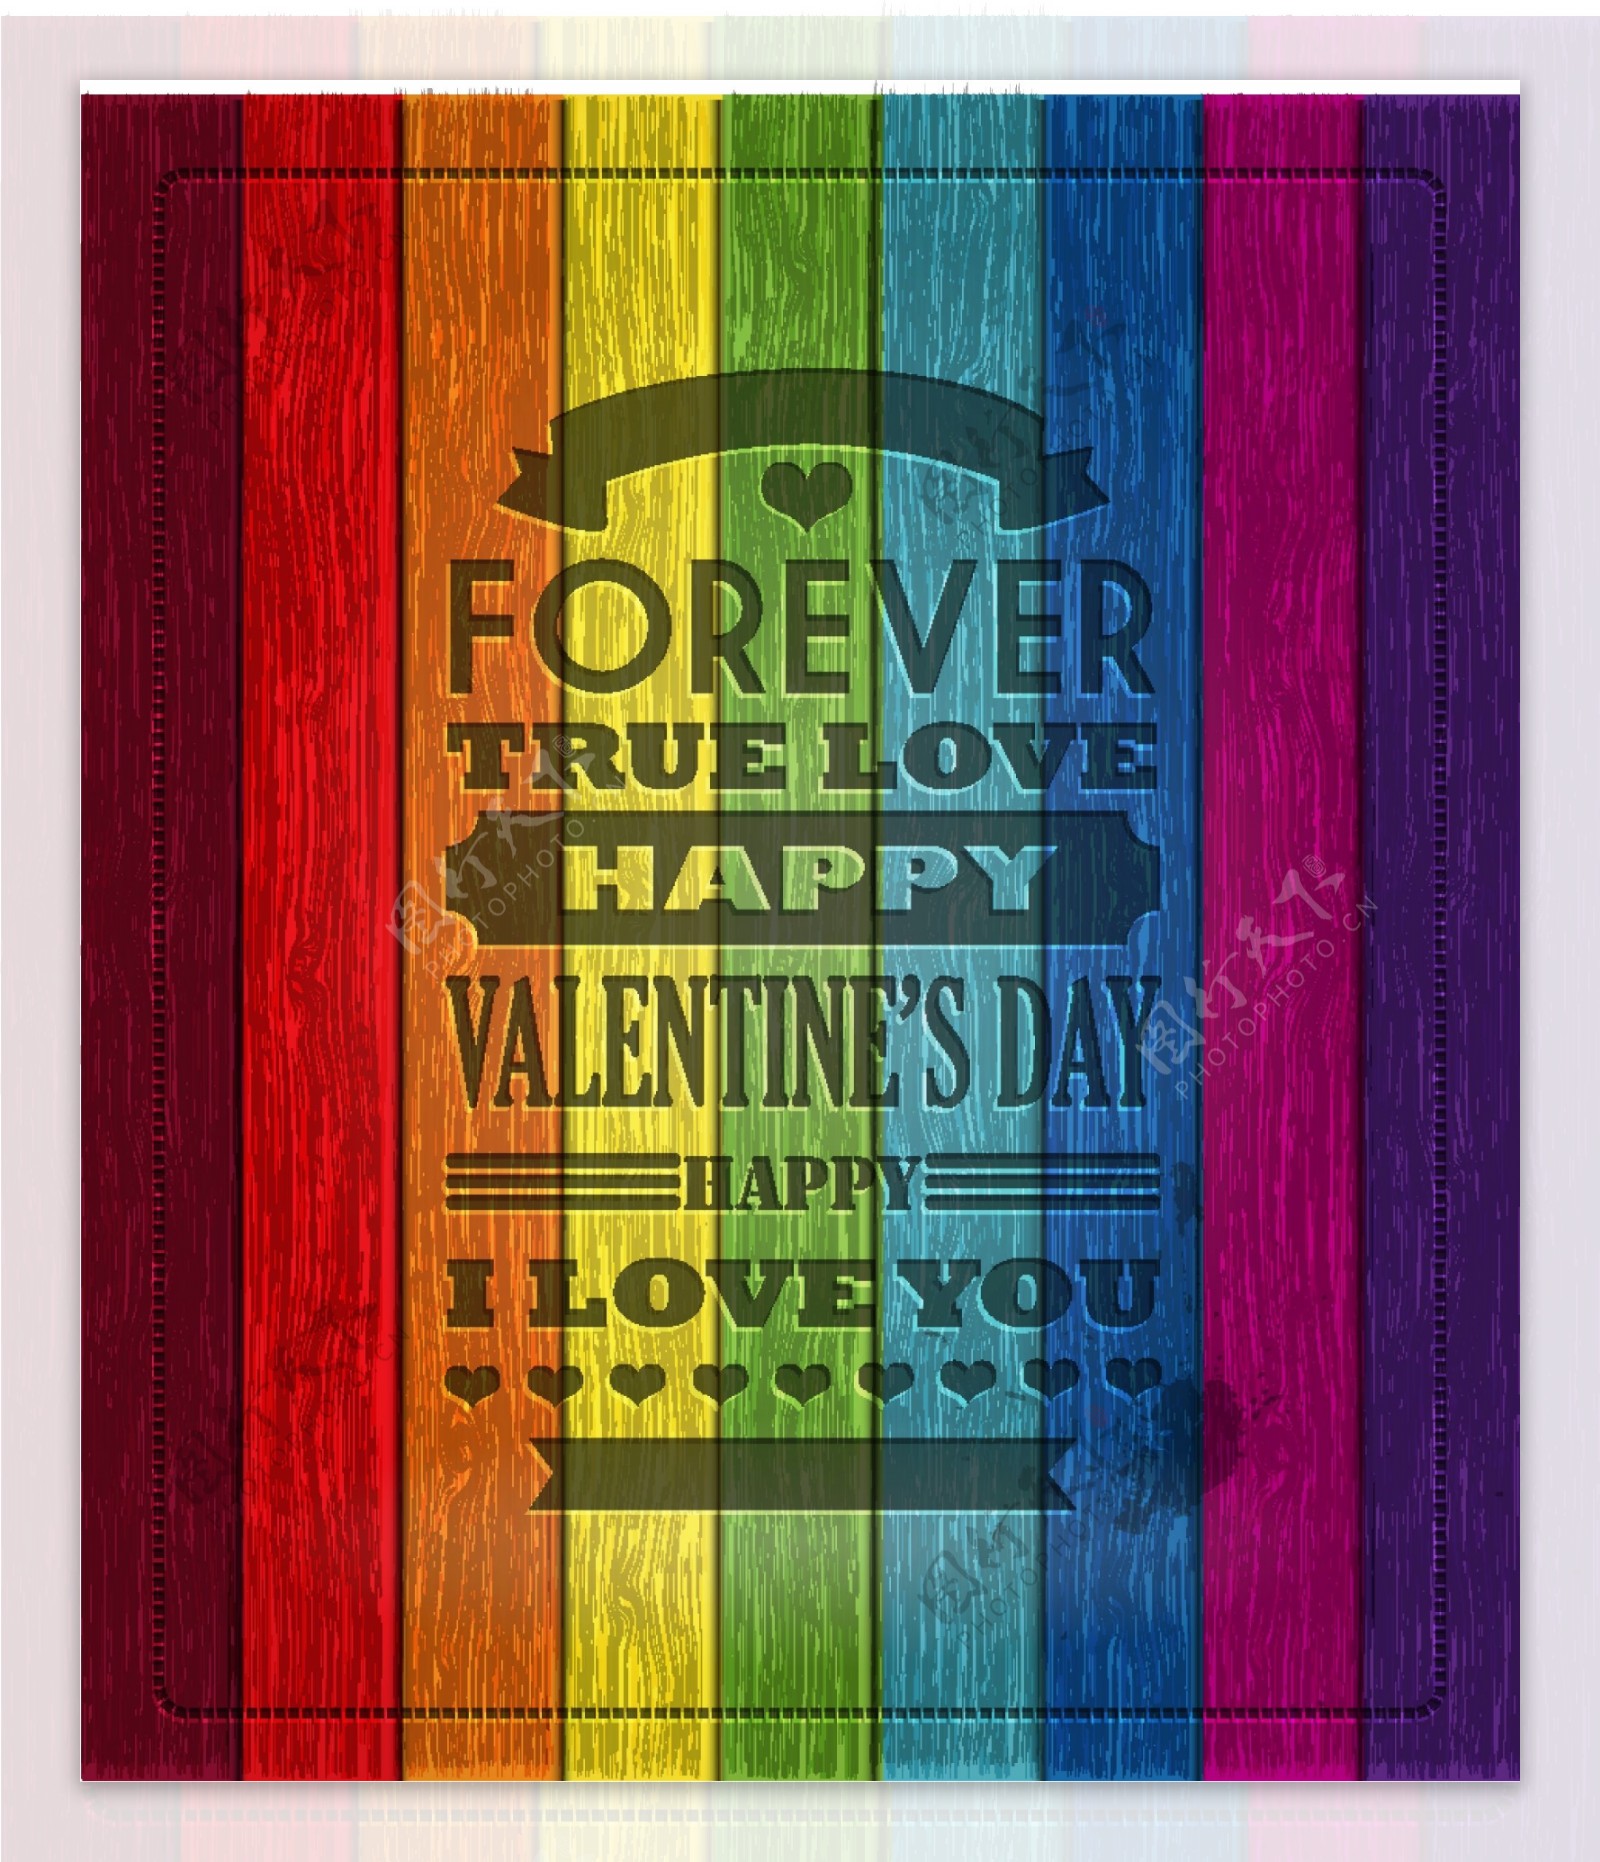 彩虹色木板情人节海报矢量素材